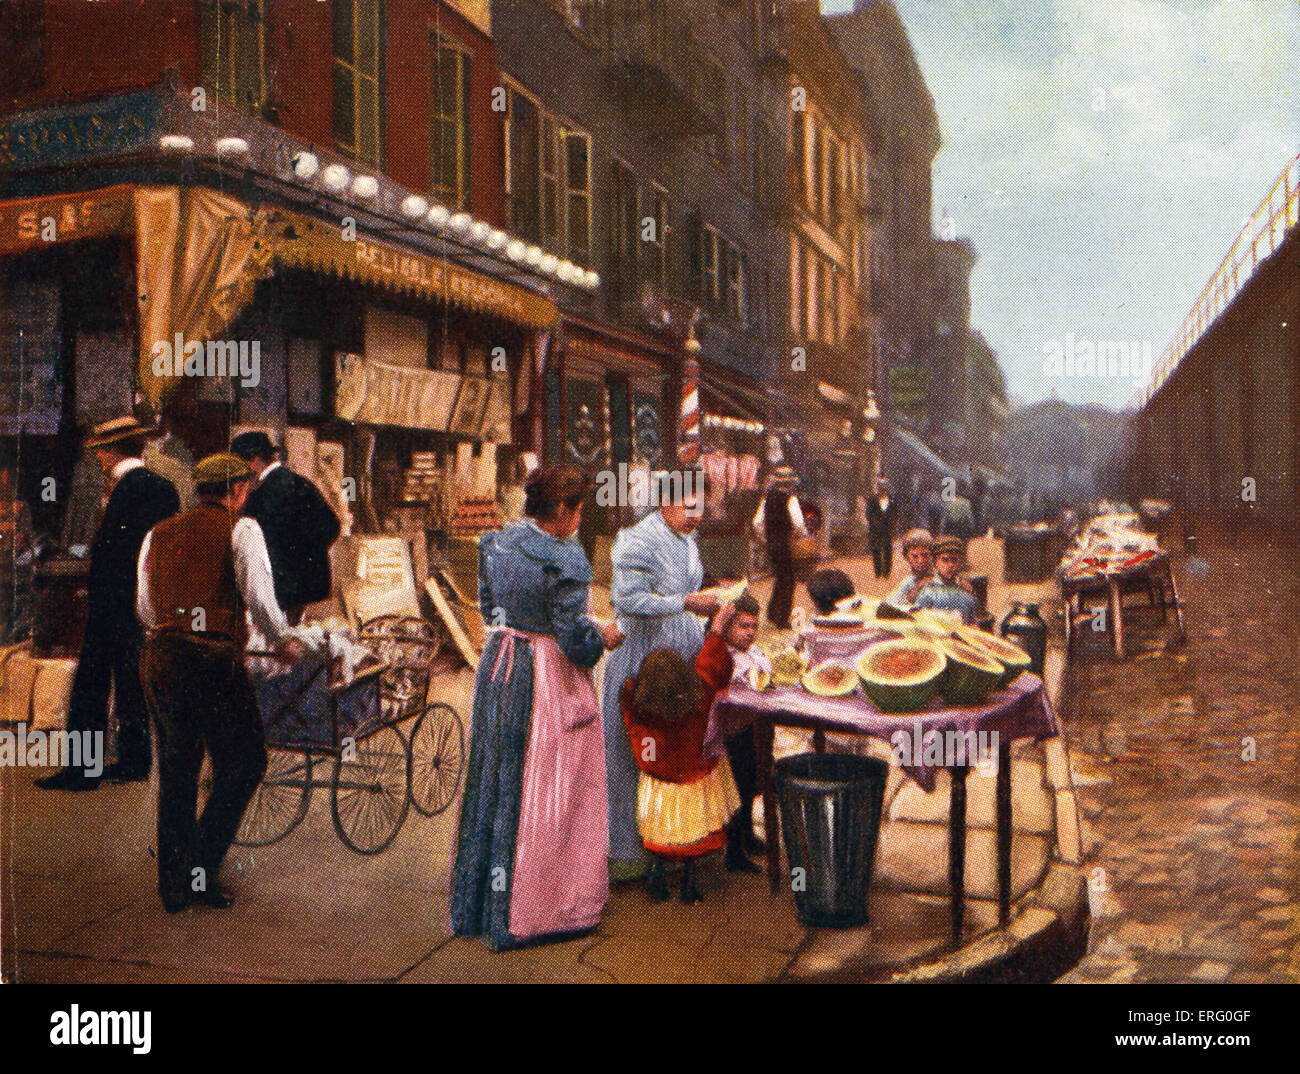 Lower East Side, New York, mit Passanten schlendern Barrow, Straßen und Geschäfte der 1890er Jahre Stände außerhalb.  Bildunterschrift lautet: Stockfoto